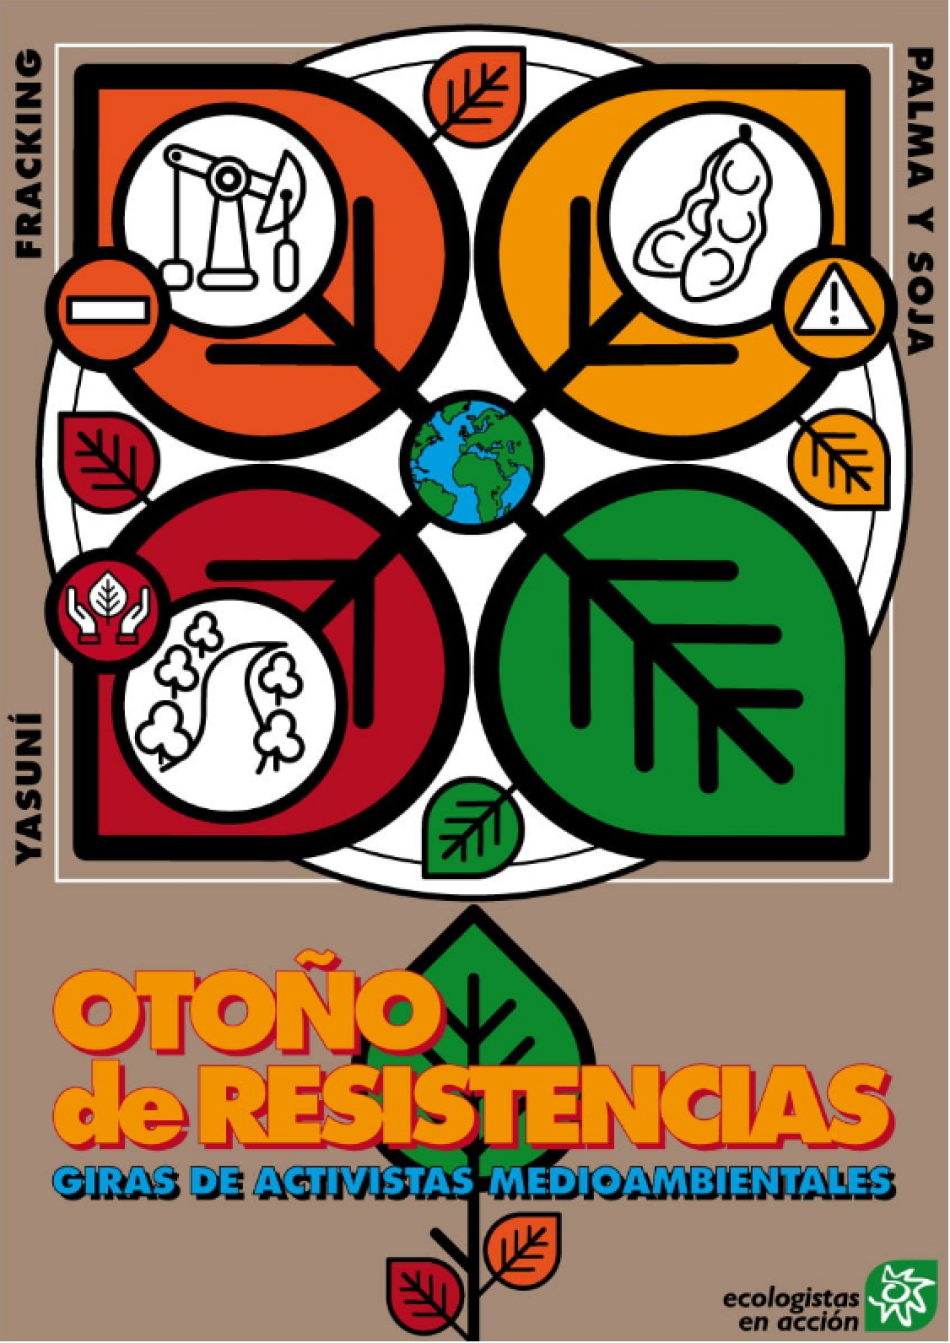 Otoño de resistencias: comienzan las giras de activistas medioambientales